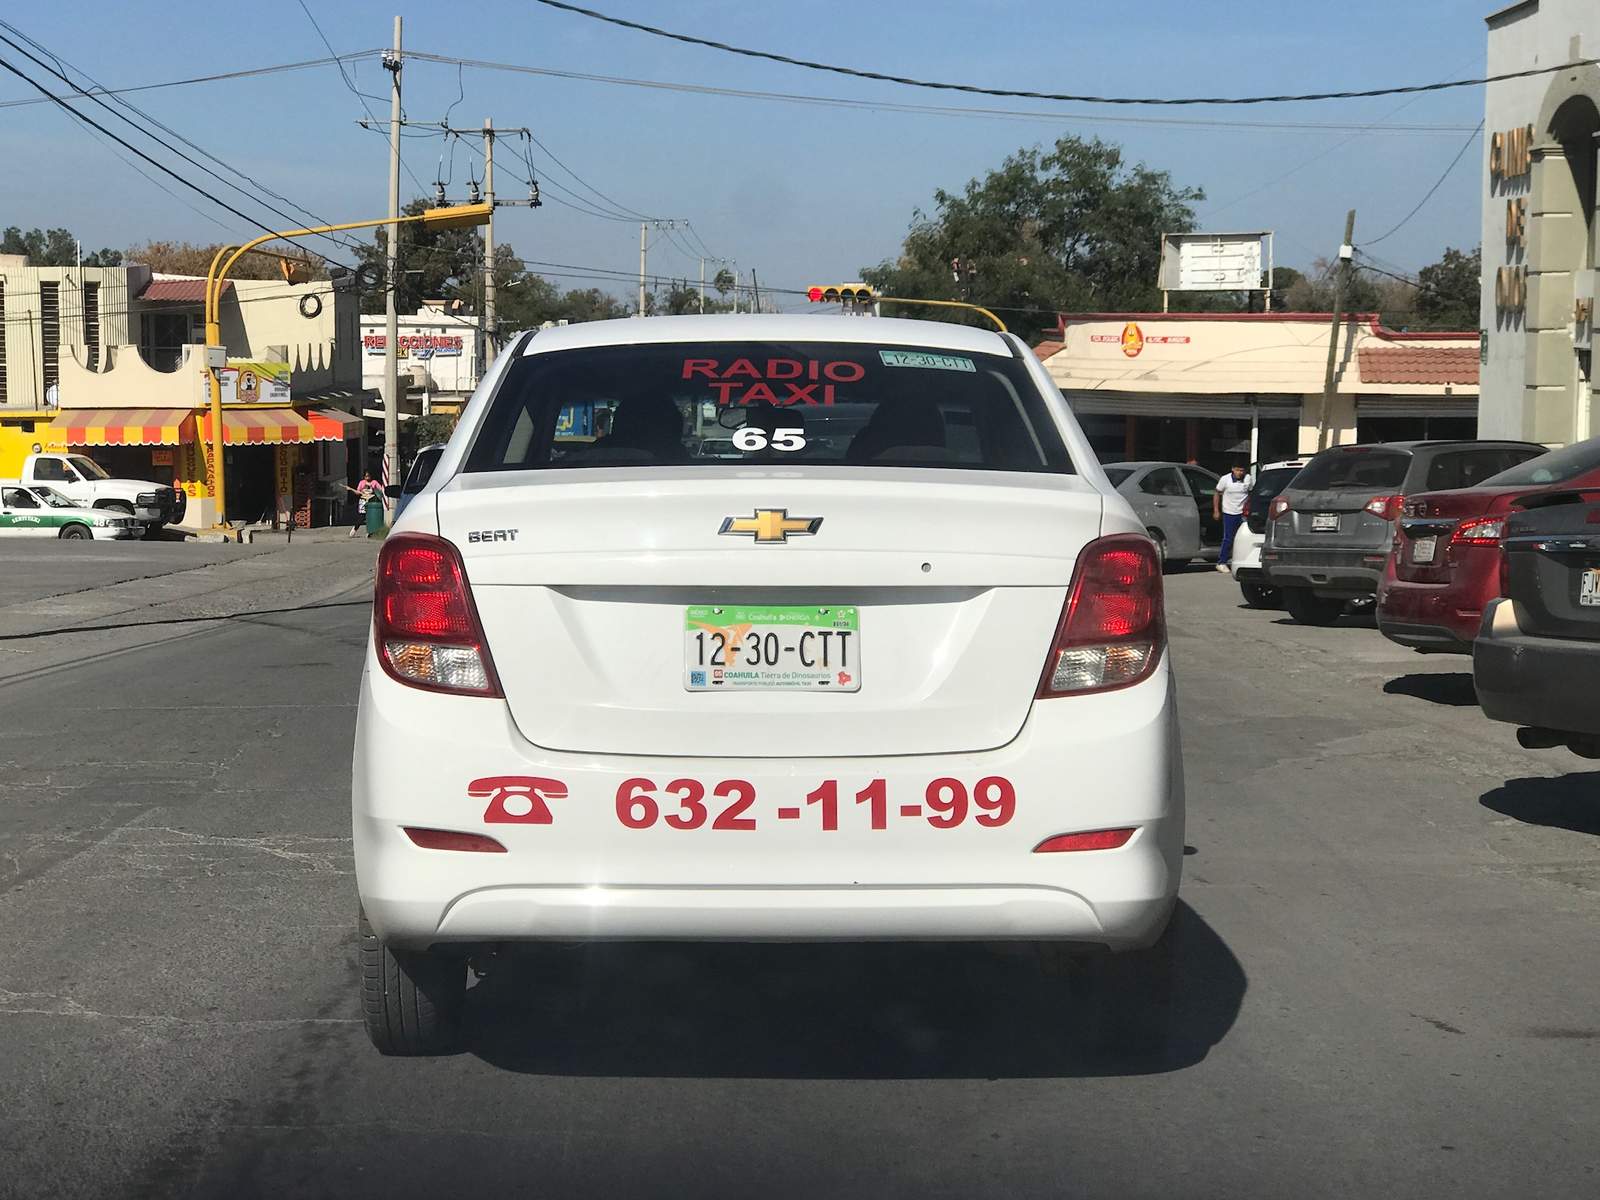 Operan en Monclova taxis con placas de otros municipios